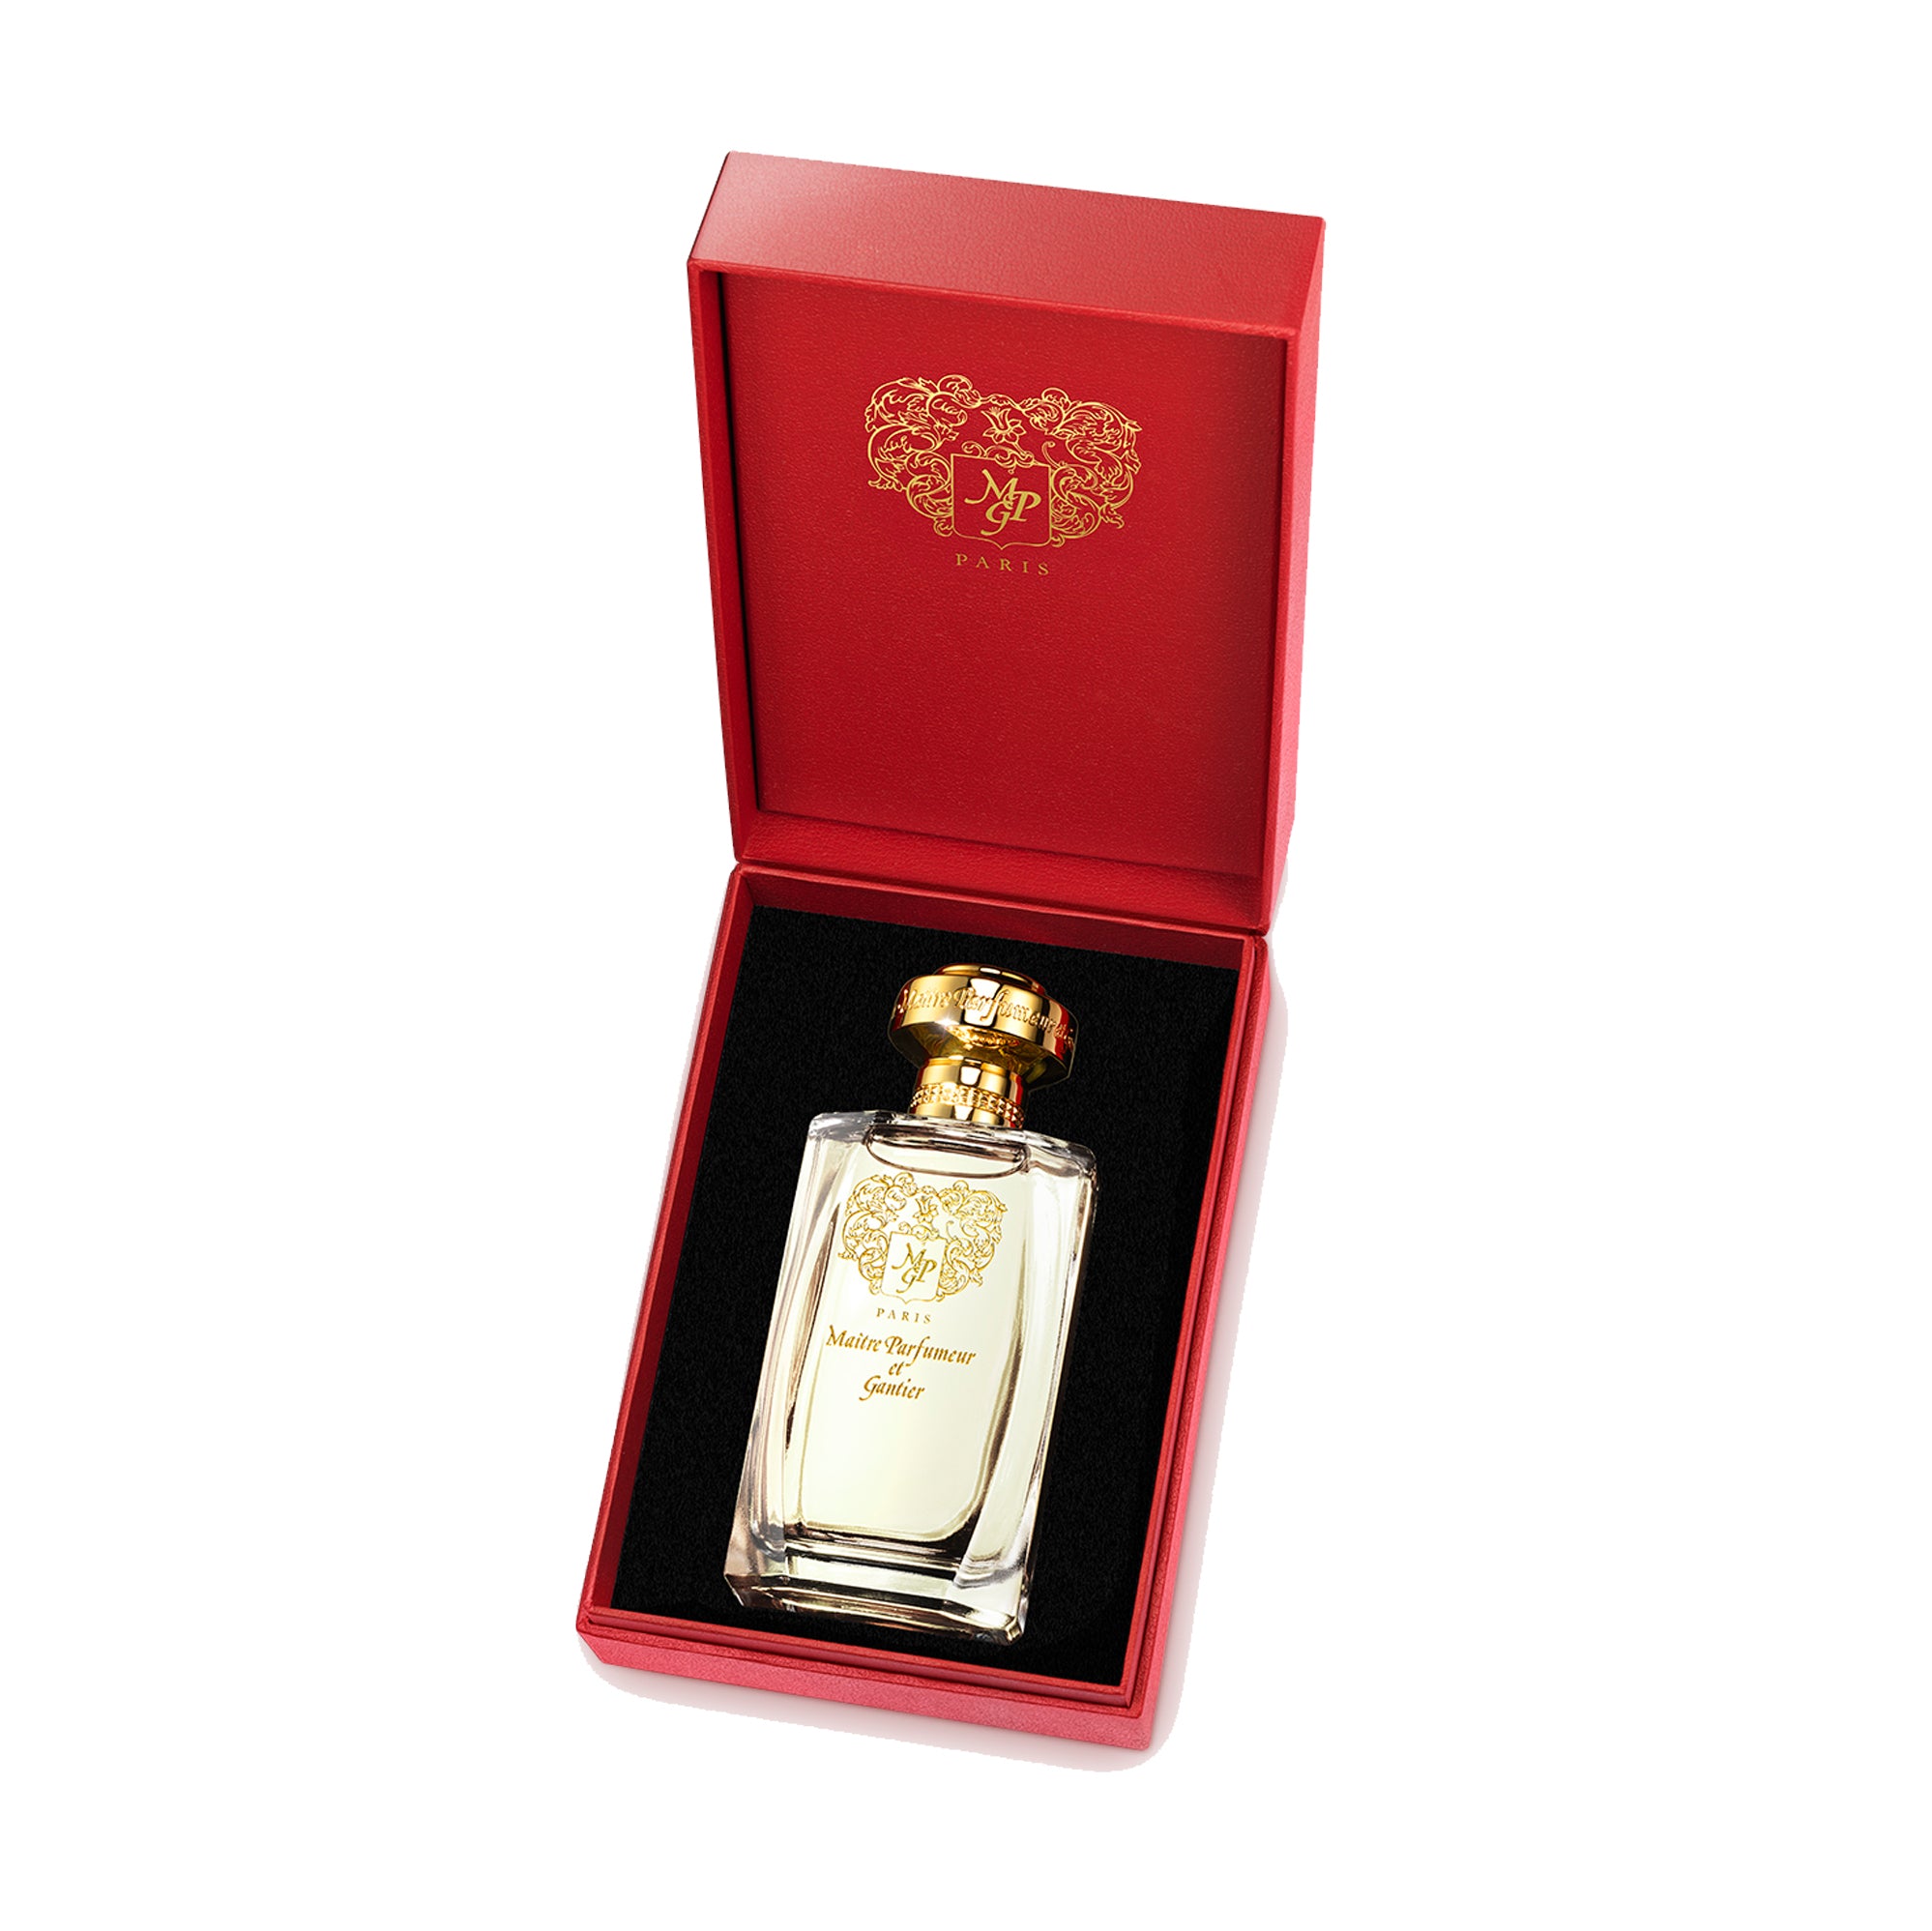 Secrète Datura Eau de Parfum 120ml Bottle by MAÎTRE PARFUMEUR ET GANTIER in Presentation Box.